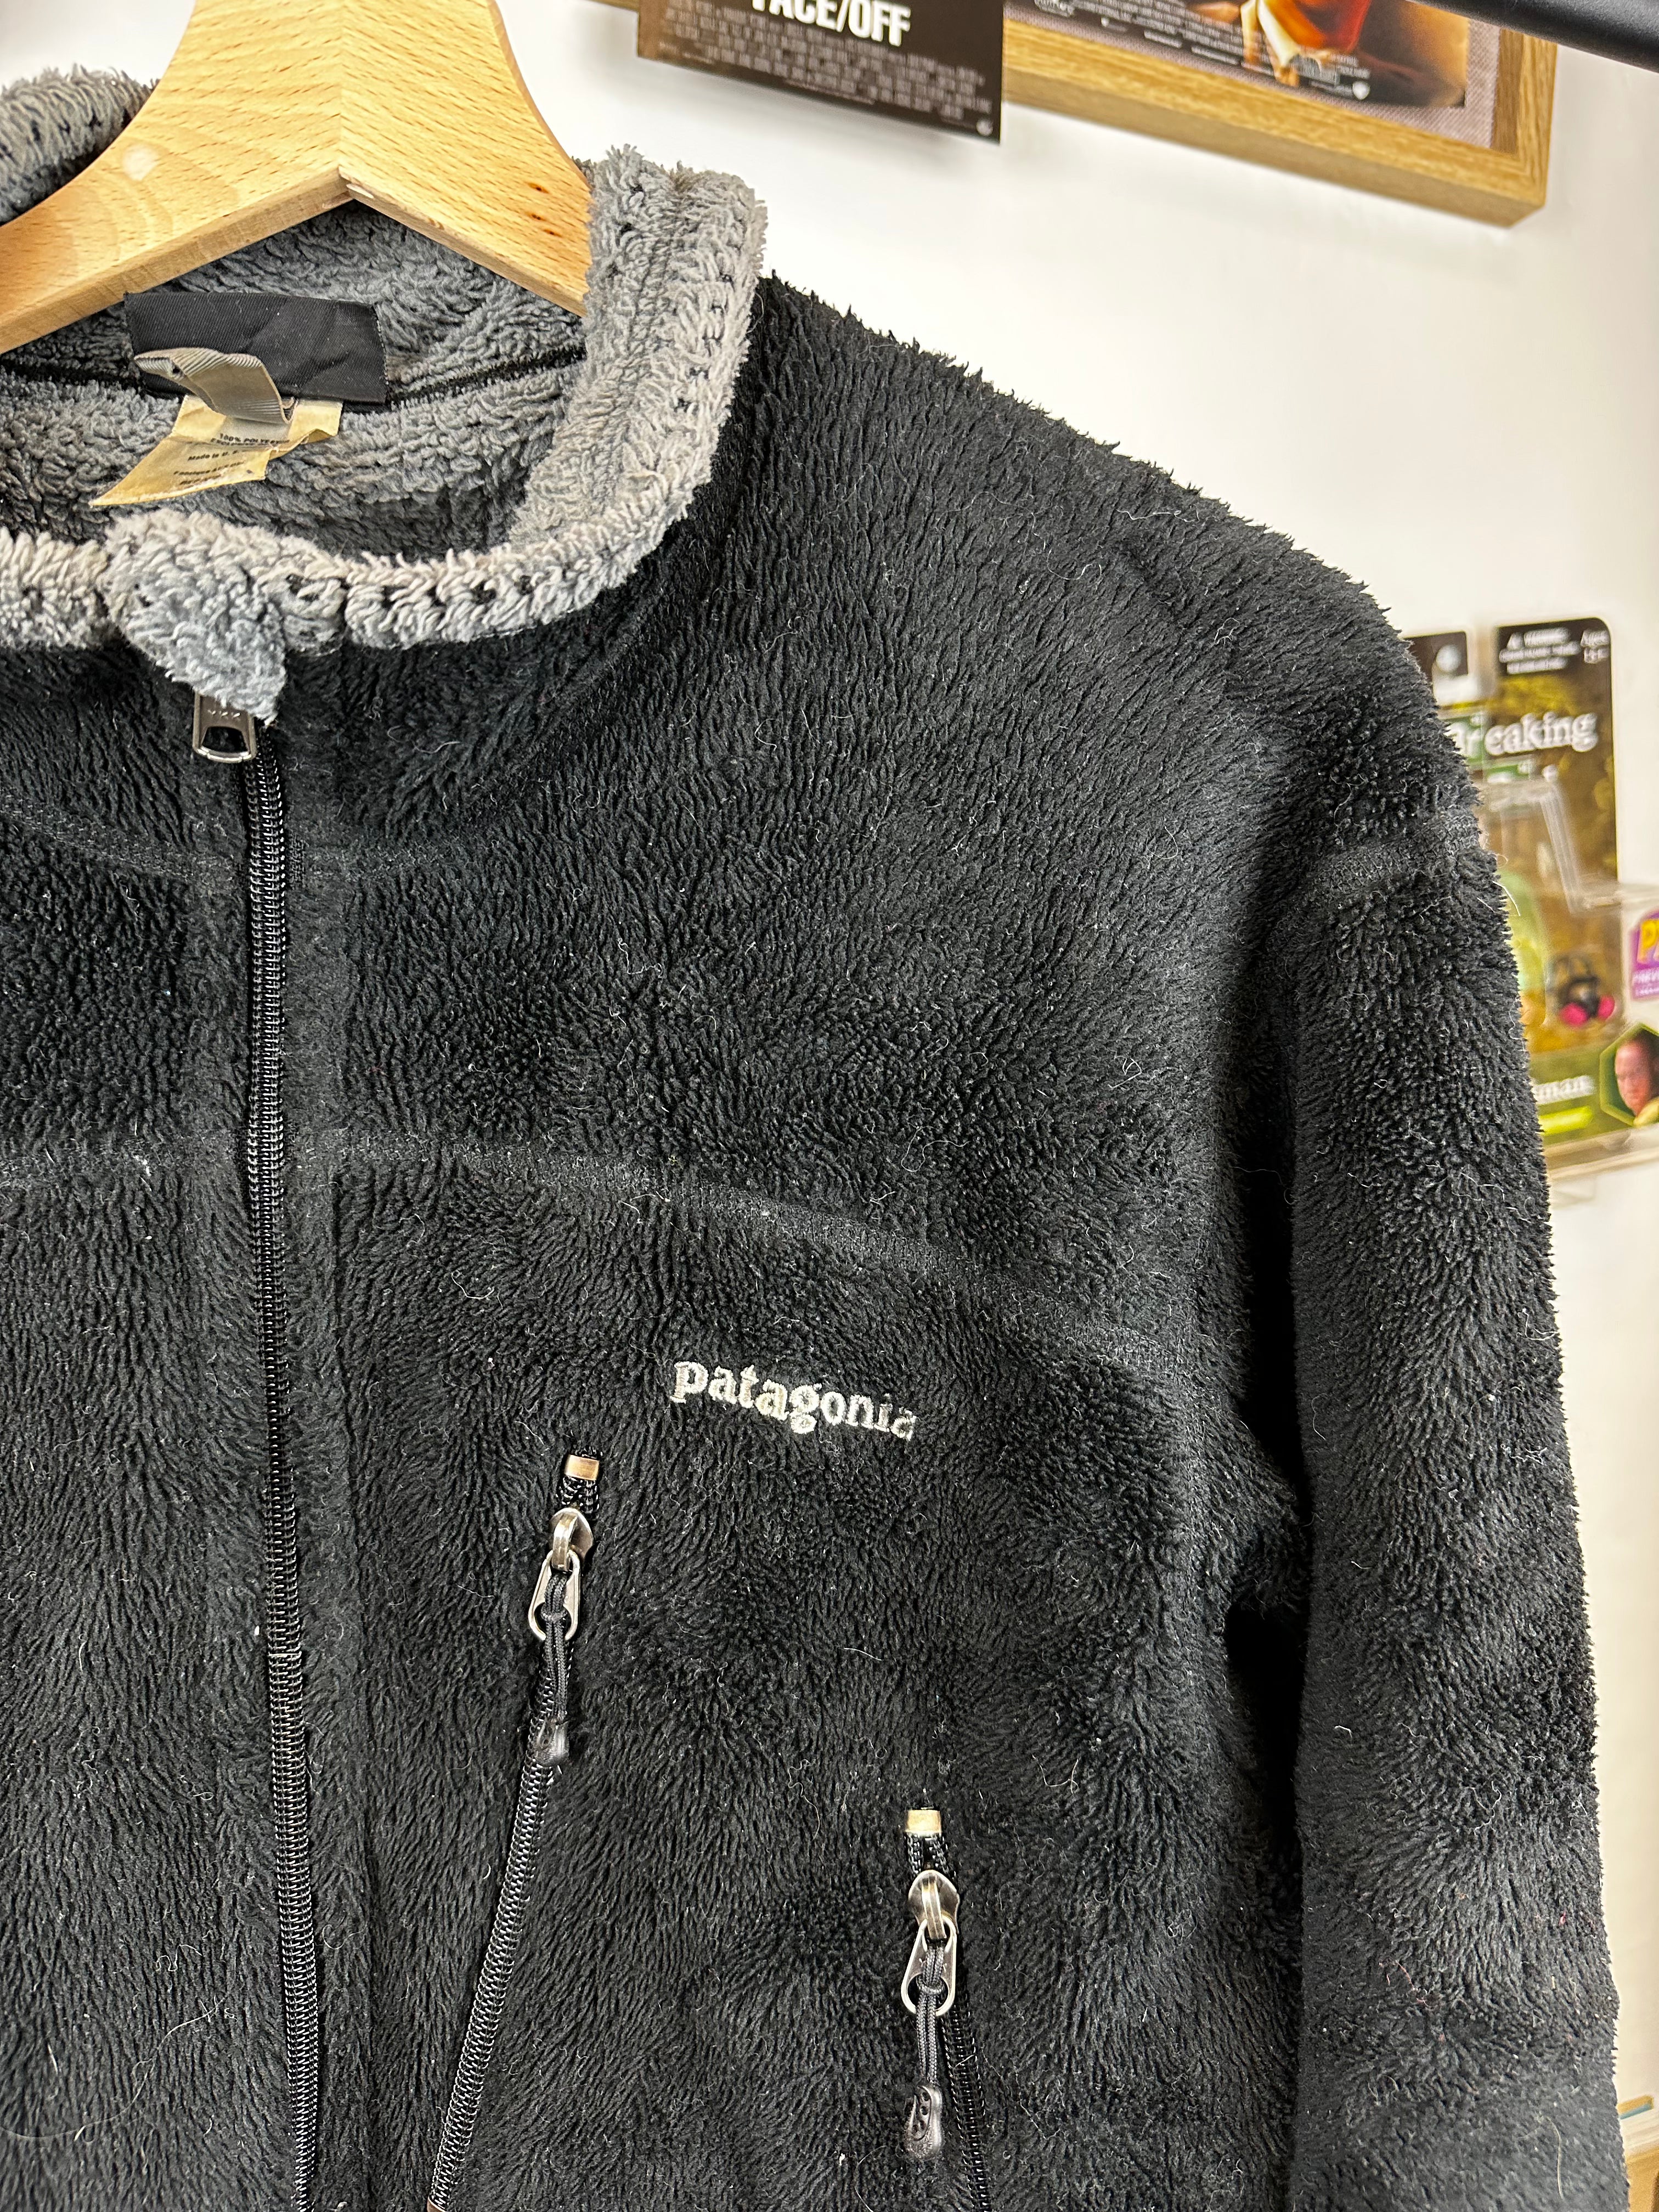 Patagonia Retro Fleece Jacket - size S